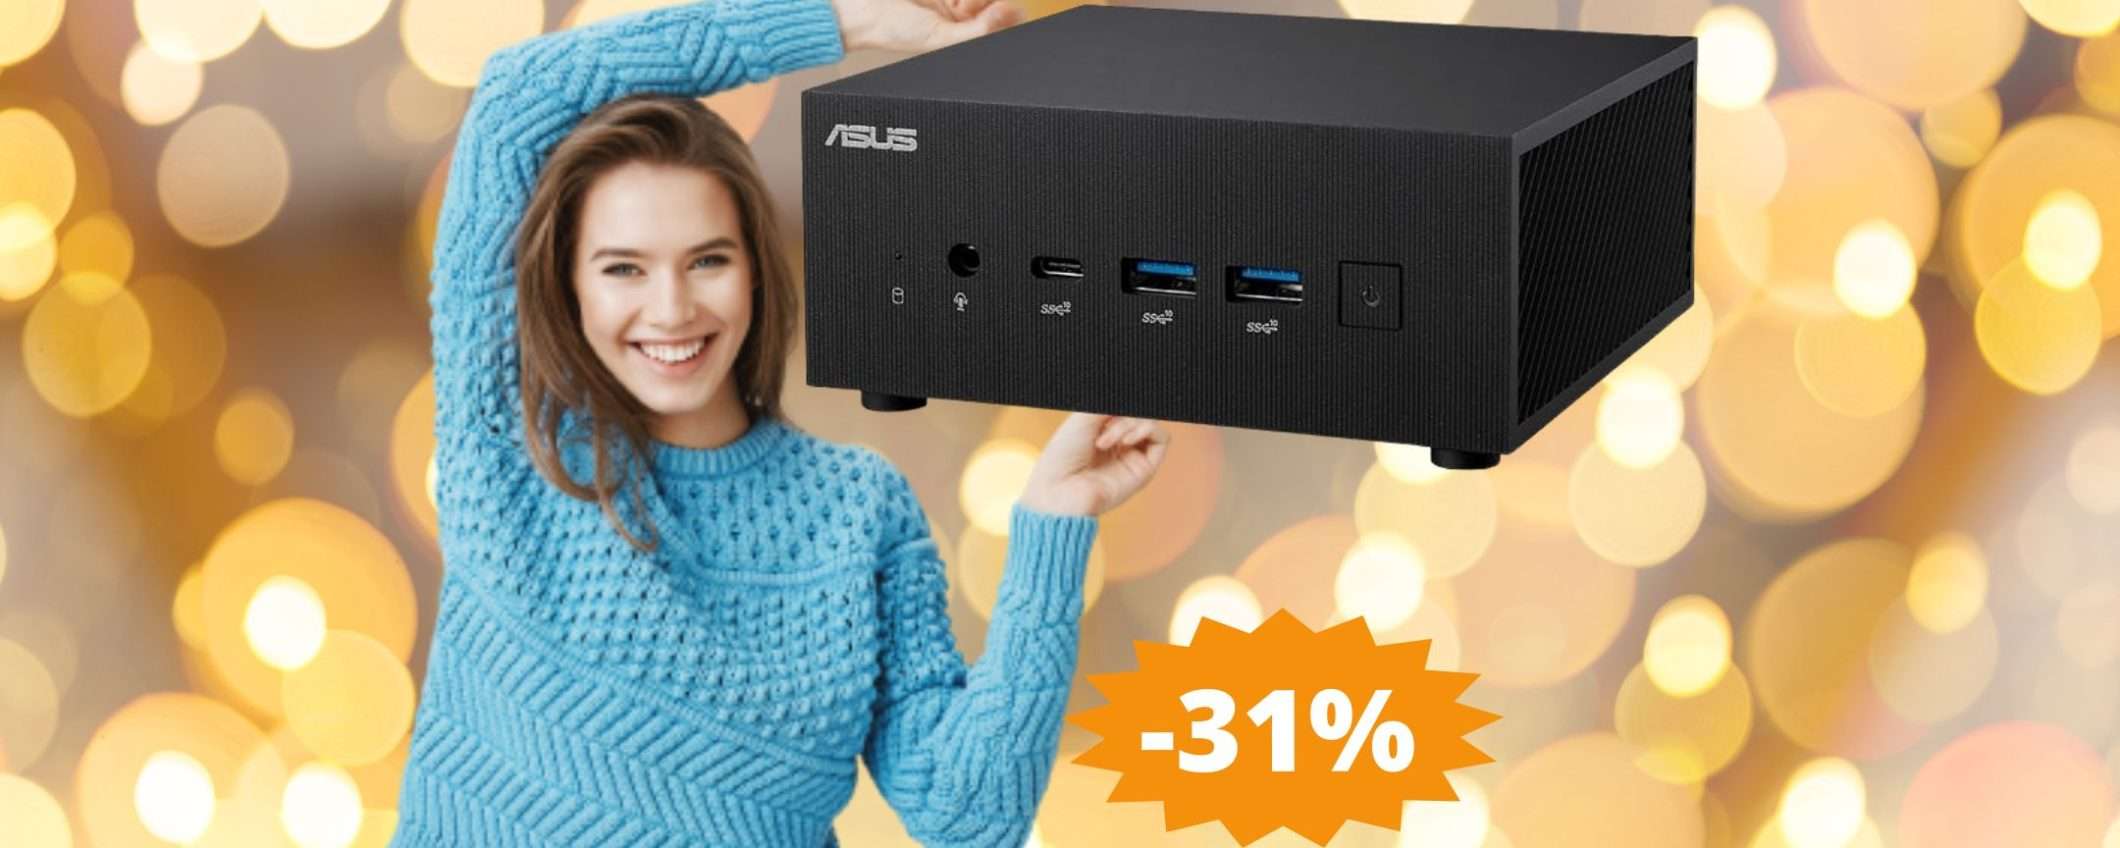 Mini PC ASUS PN64: MEGA sconto del 31% su Amazon